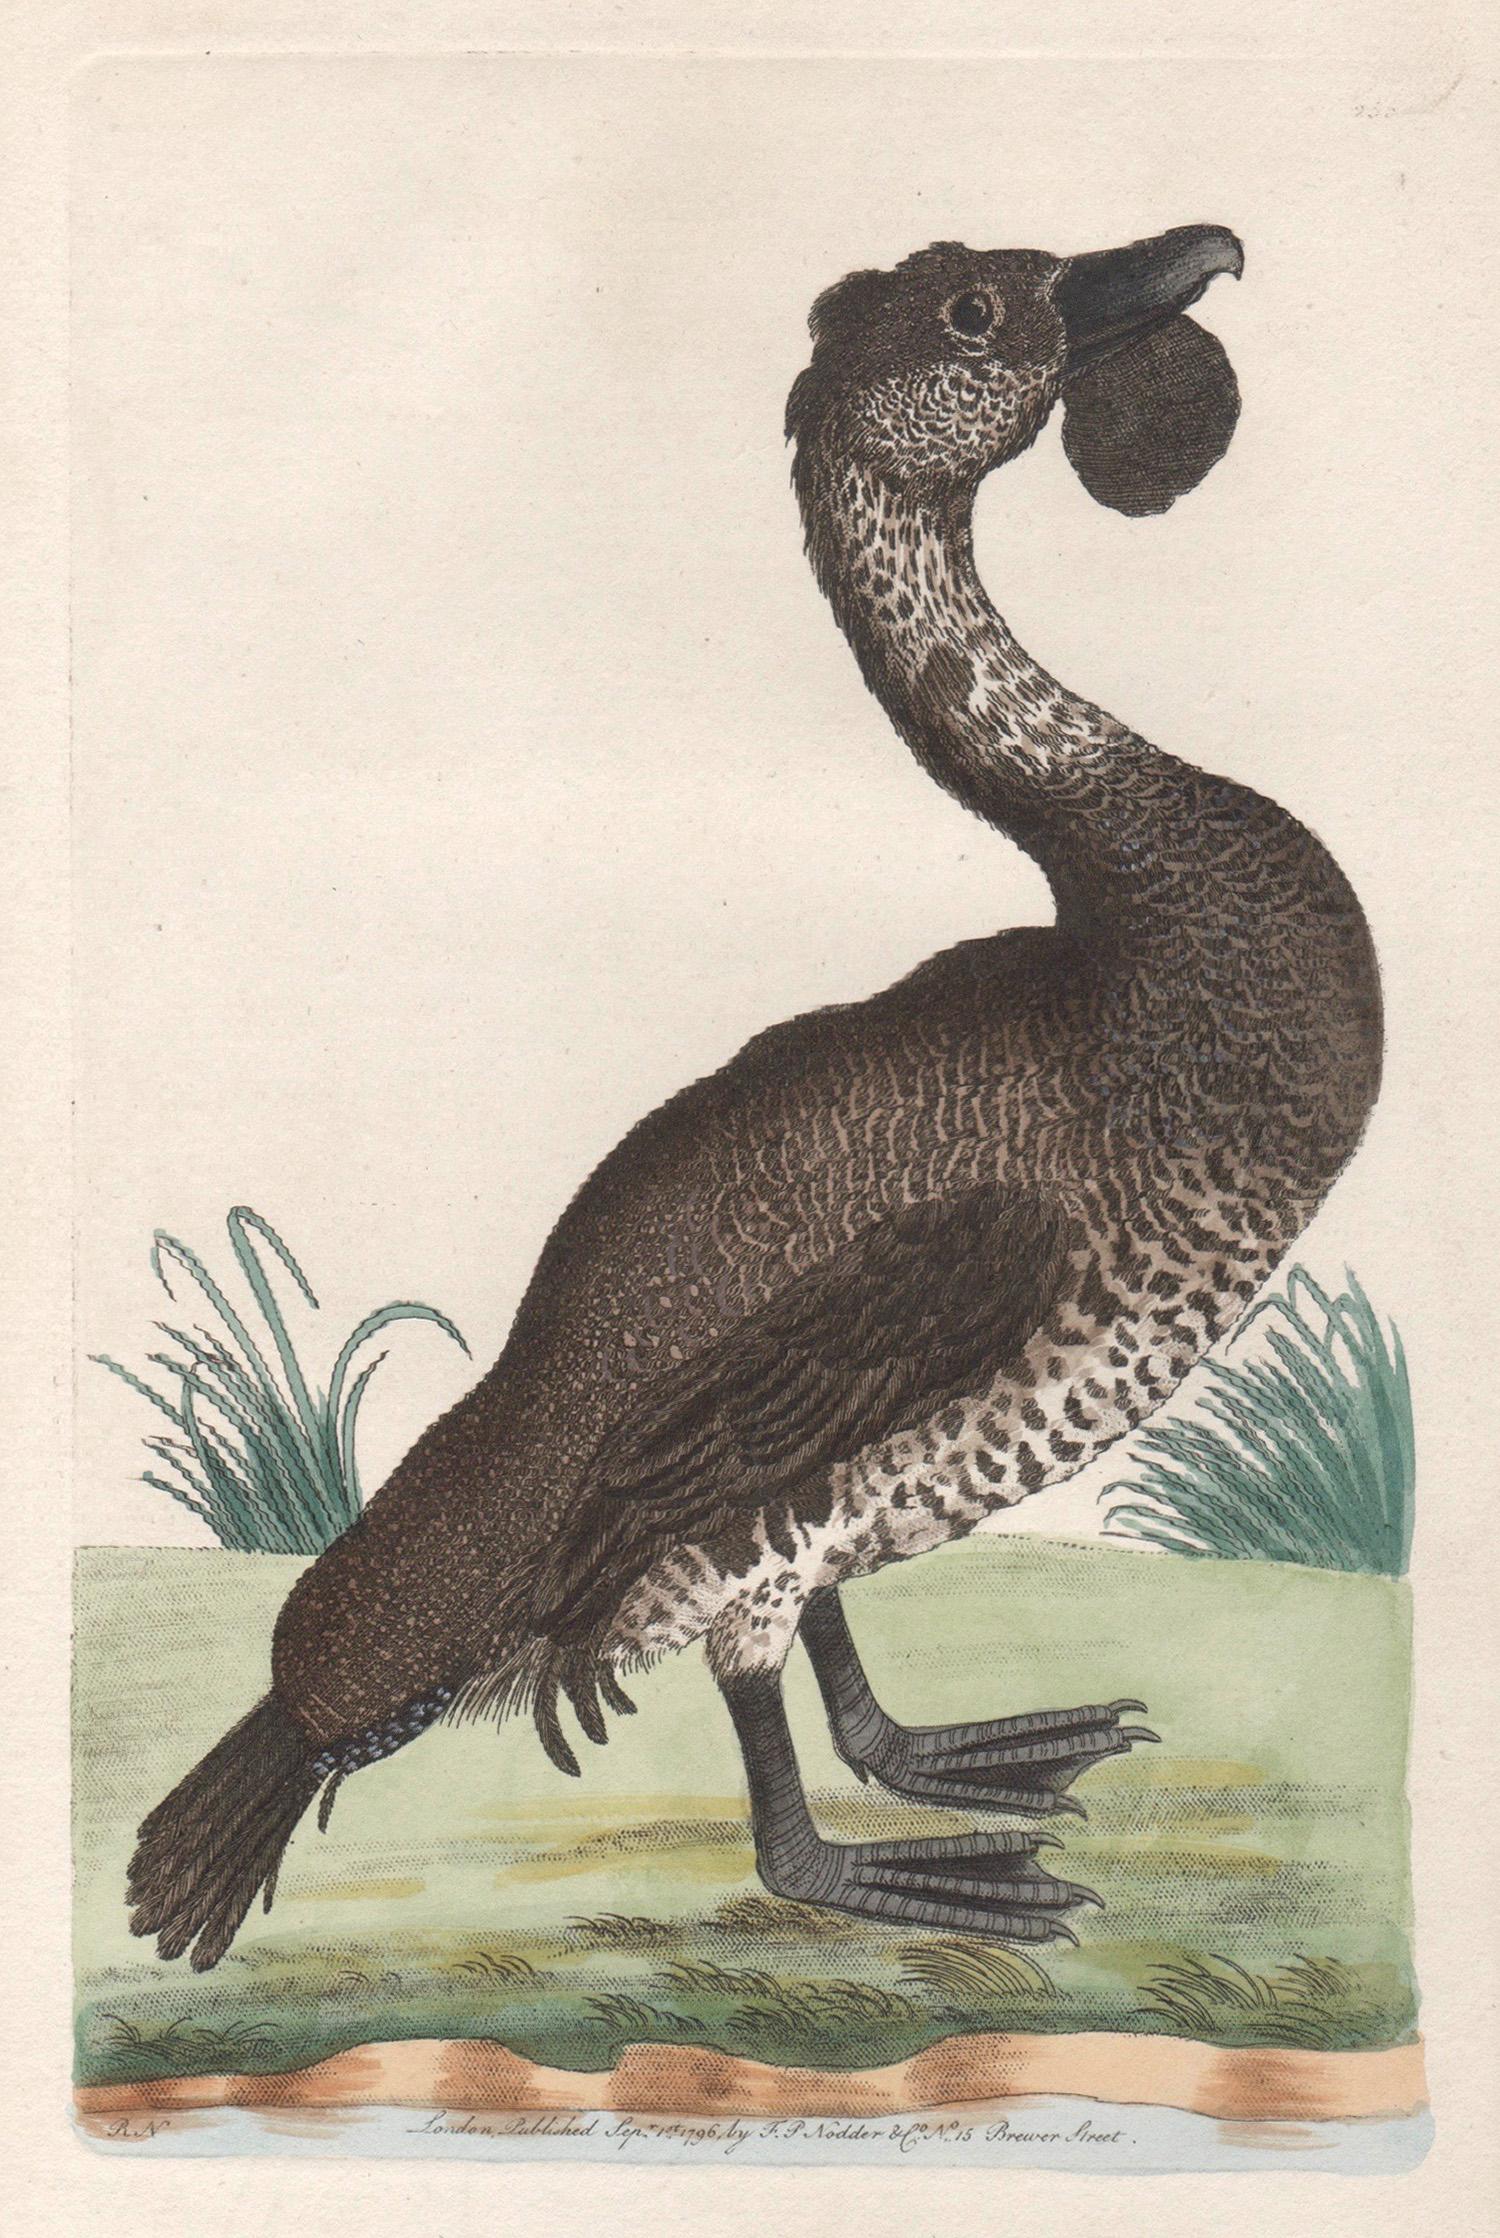 Richard Polydore Nodder Animal Print – The Lobated Musk Duck, Australien, Kupferstich mit Original-Handkolorierung, 1795